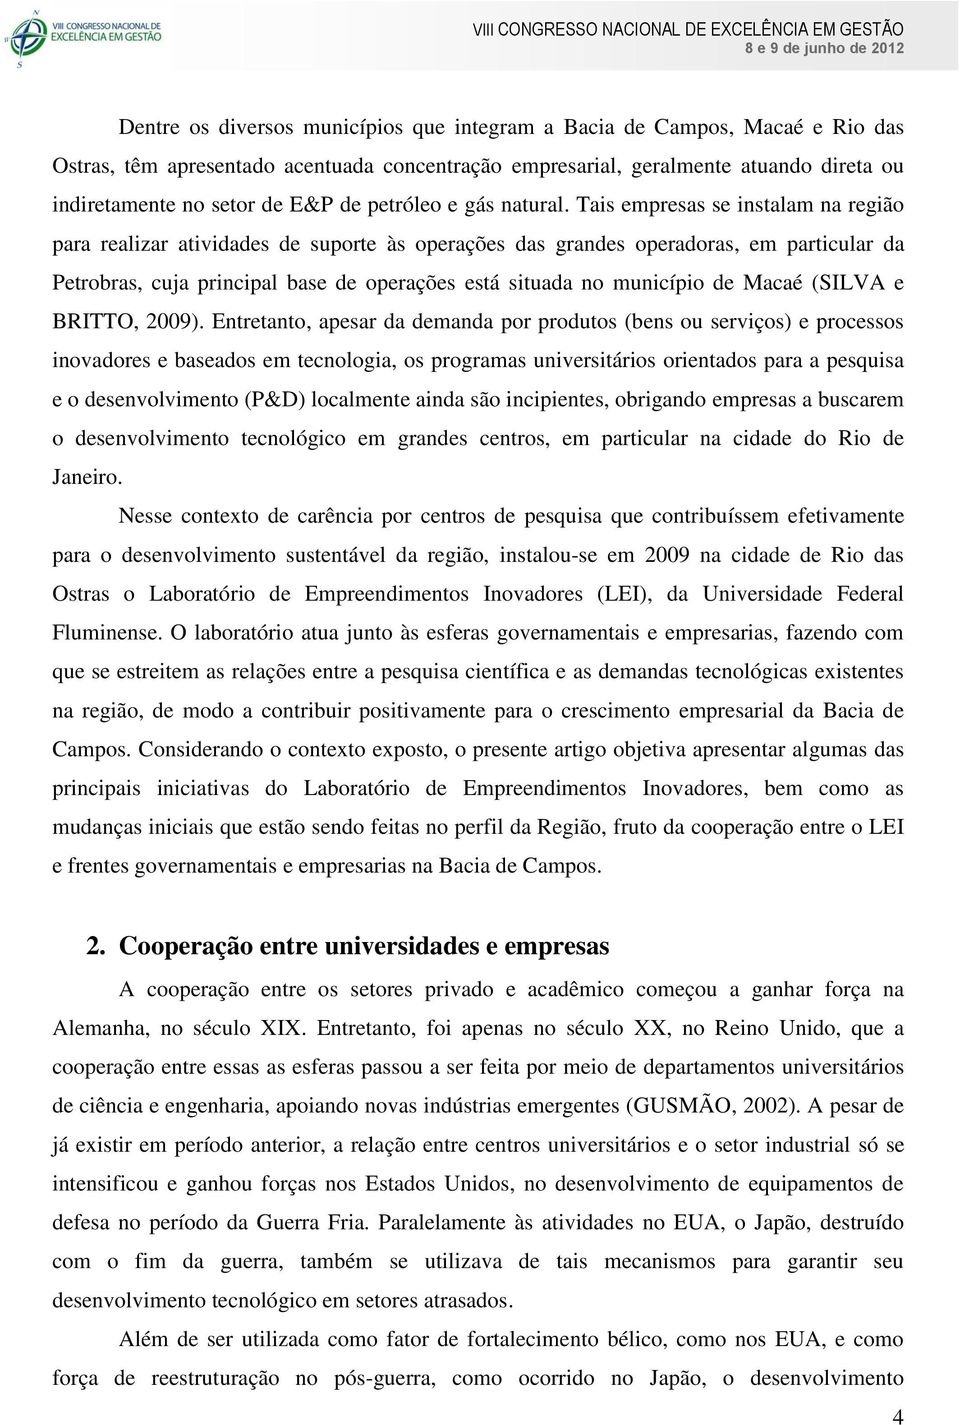 Tais empresas se instalam na região para realizar atividades de suporte às operações das grandes operadoras, em particular da Petrobras, cuja principal base de operações está situada no município de